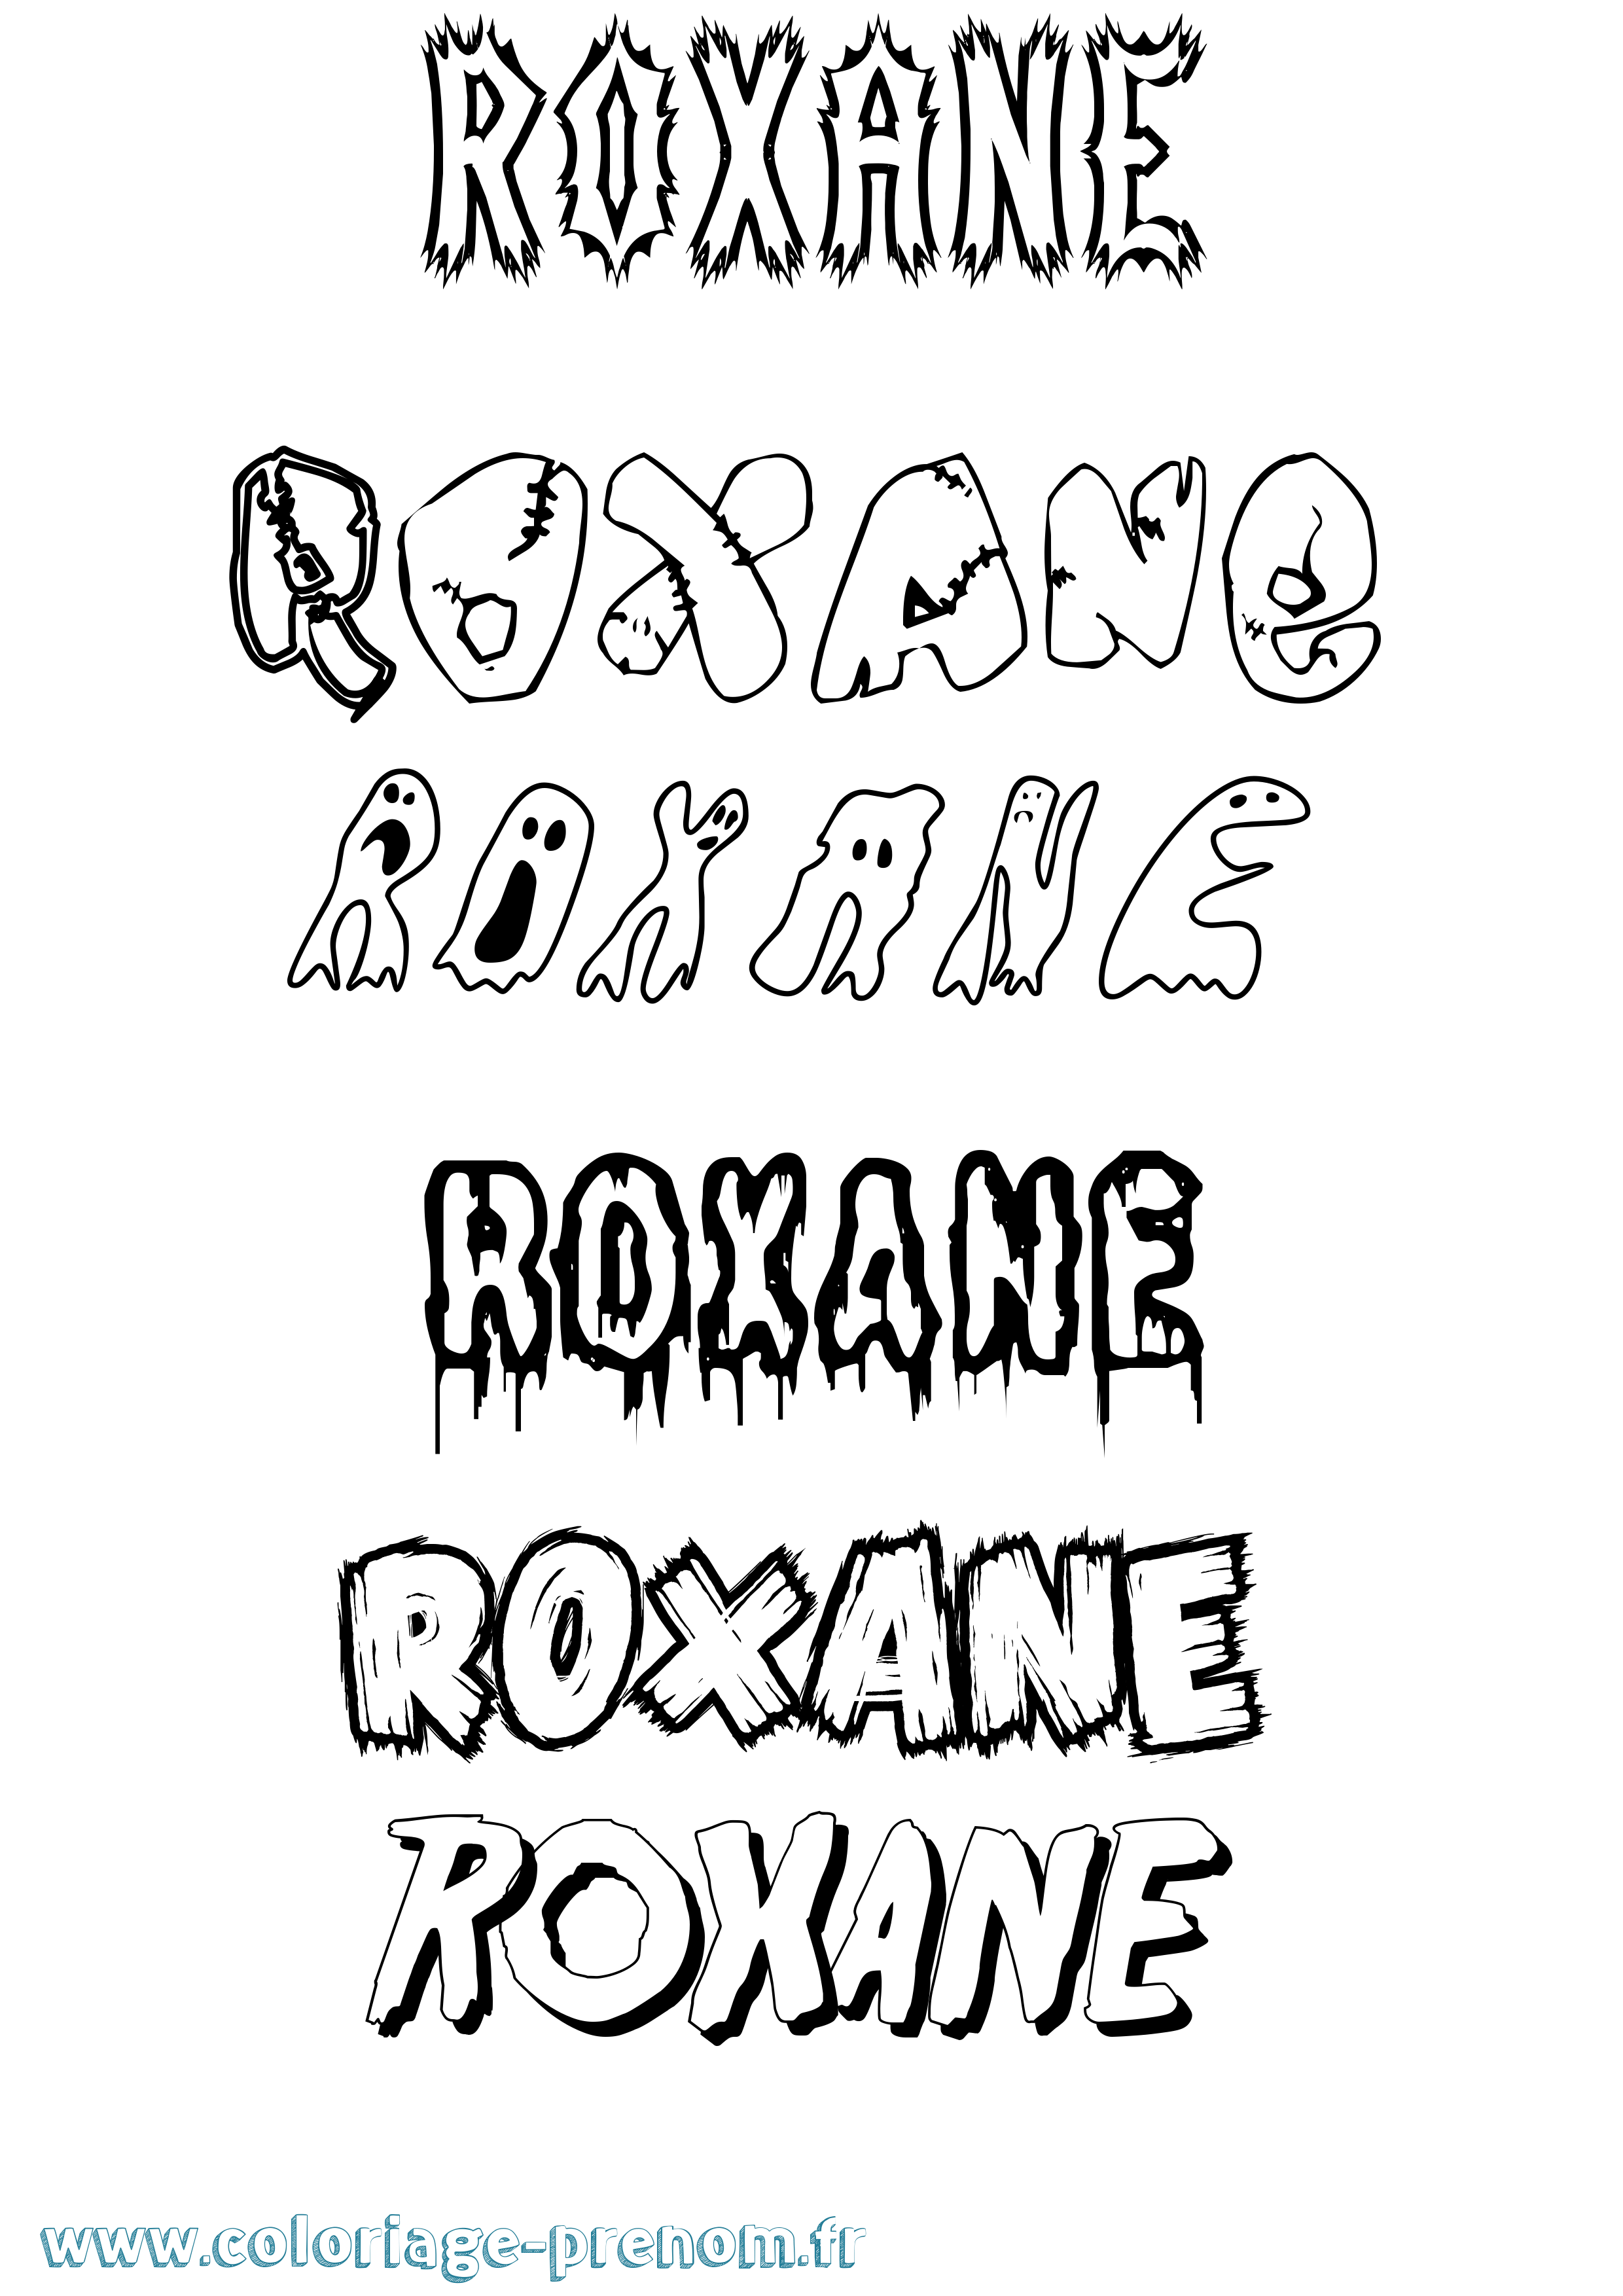 Coloriage prénom Roxane Frisson